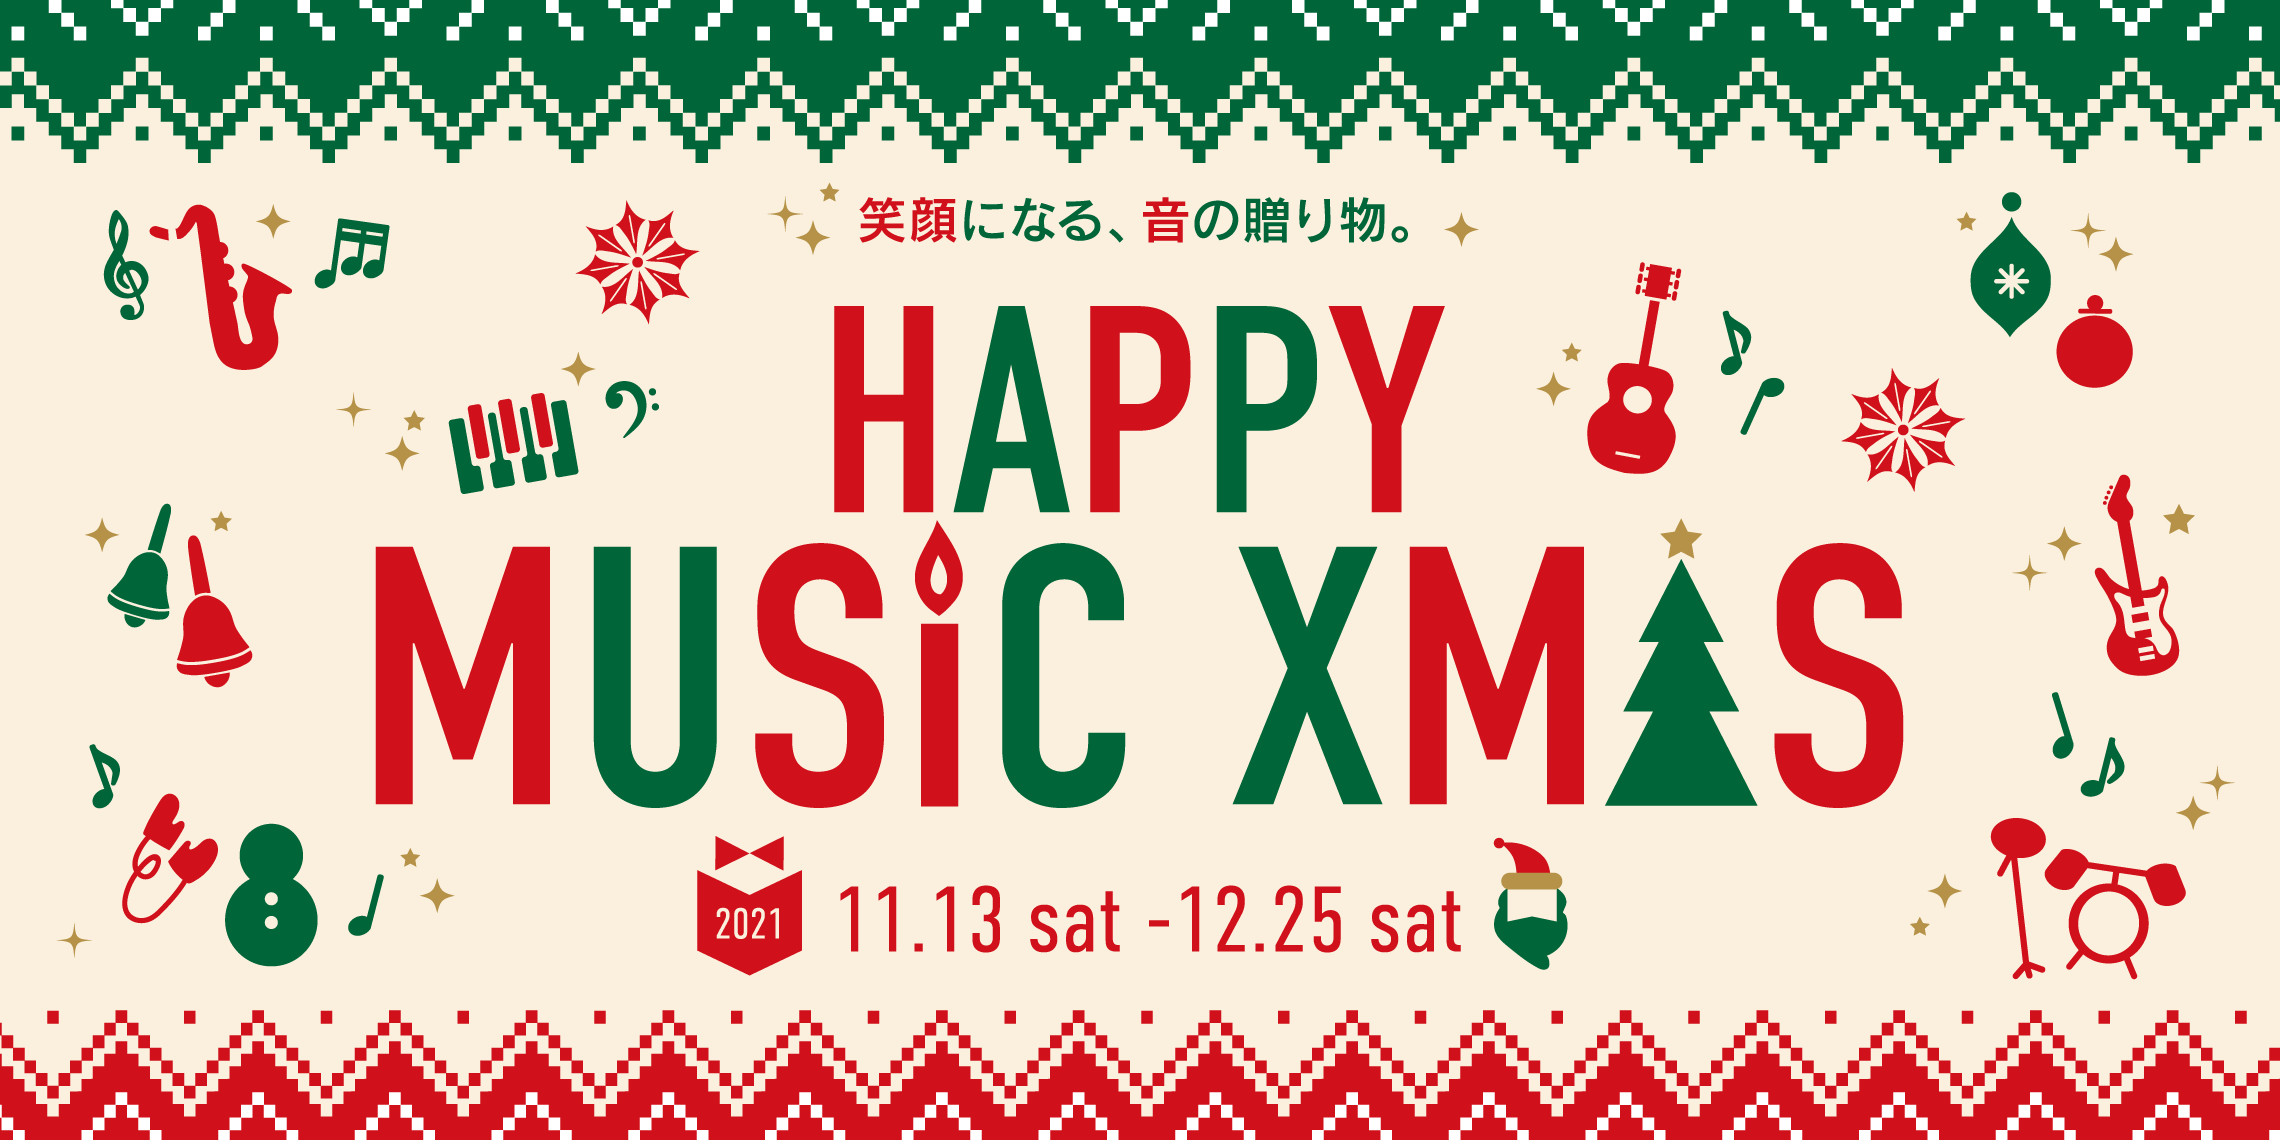 こんにちは！]]お誕生日や記念日、クリスマスなど、プレゼントを贈る機会はたくさんありますよね。友人や恋人、両親や上司へのプレゼント選び、楽しいけど迷いますよね。 [!!日々多くのギタリスト・ベーシストと接している名古屋茶屋店岡田!!]がギタリストがもらってうれしいプレゼントについて教えちゃいます！  […]